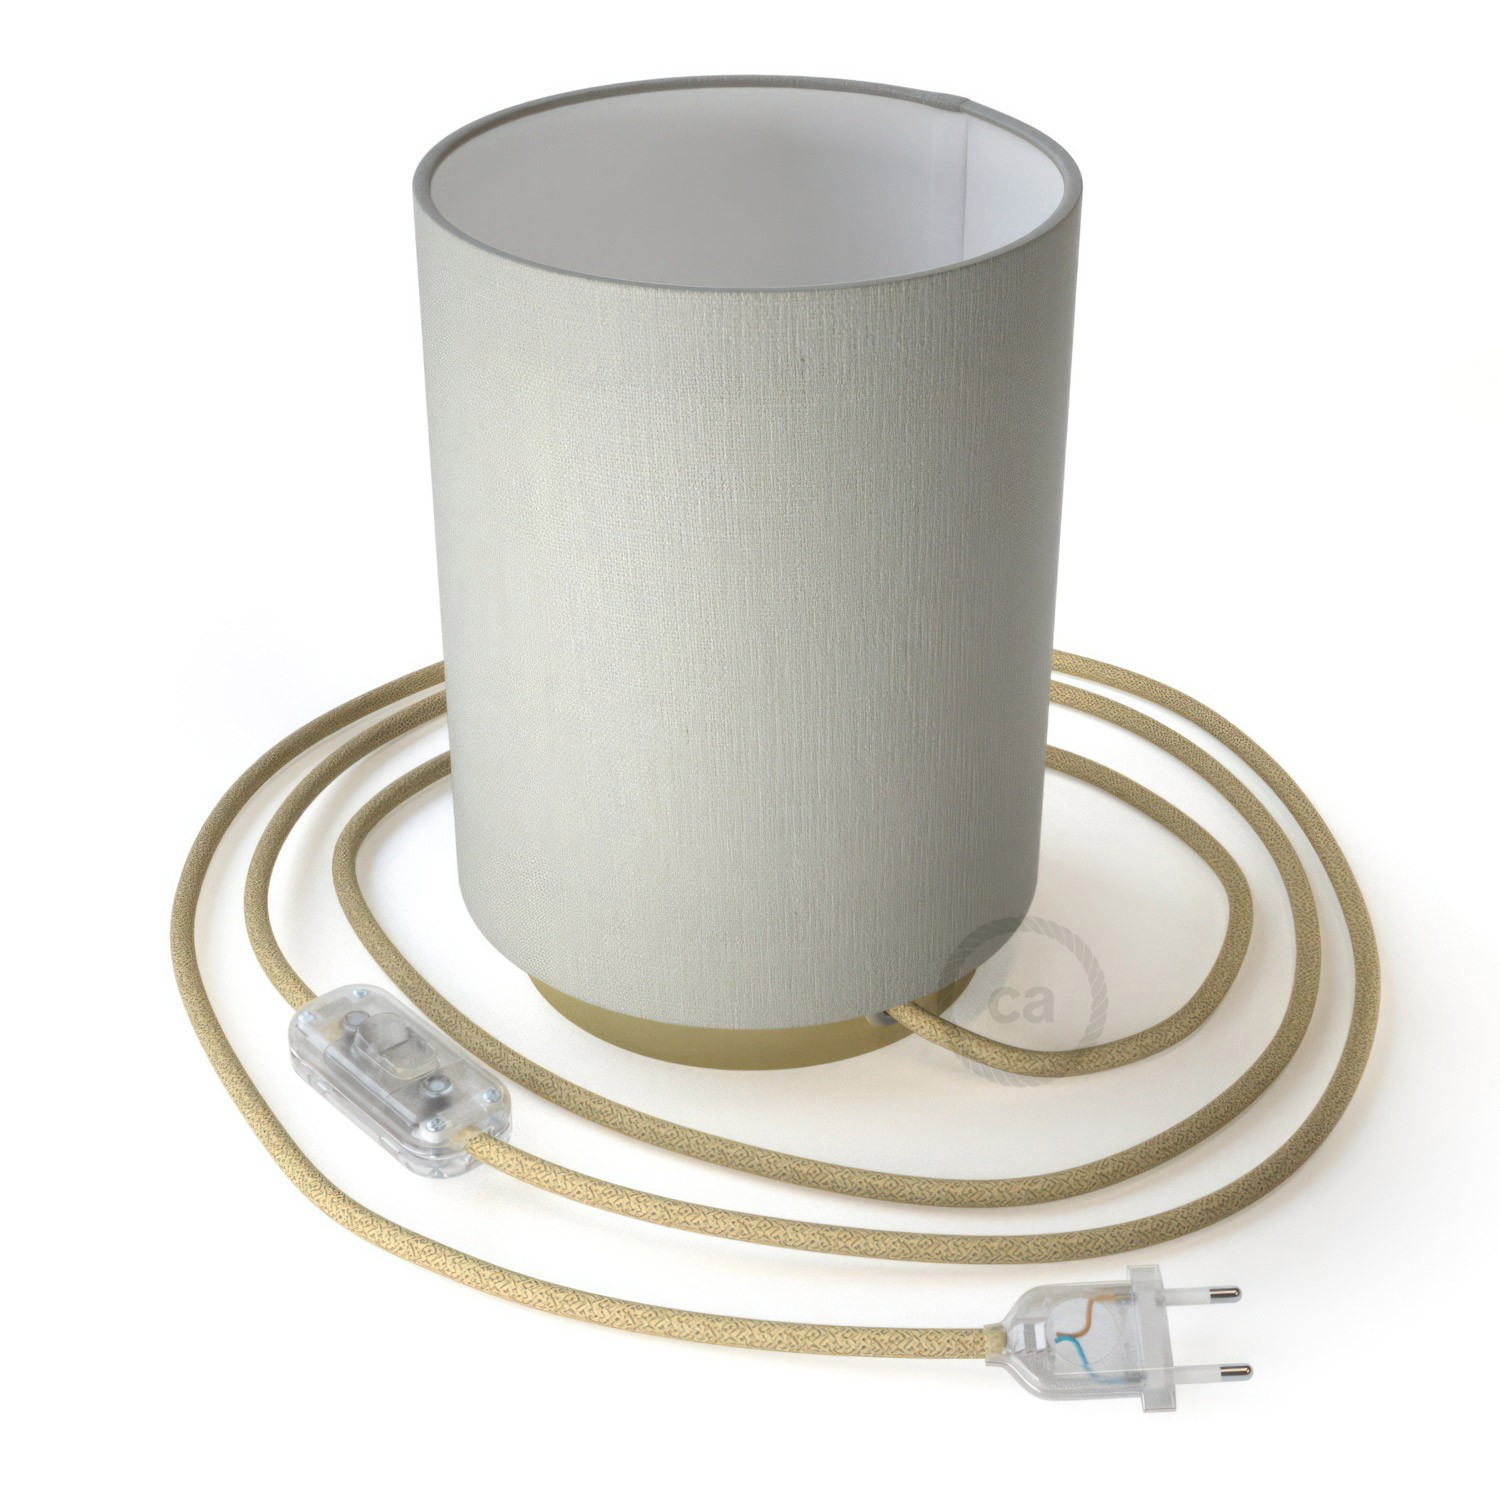 Posaluce Metal met Cilindro lampenkap van wit linnen, inclusief lichtbron, textielkabel, schakelaar en 2-polige stekker